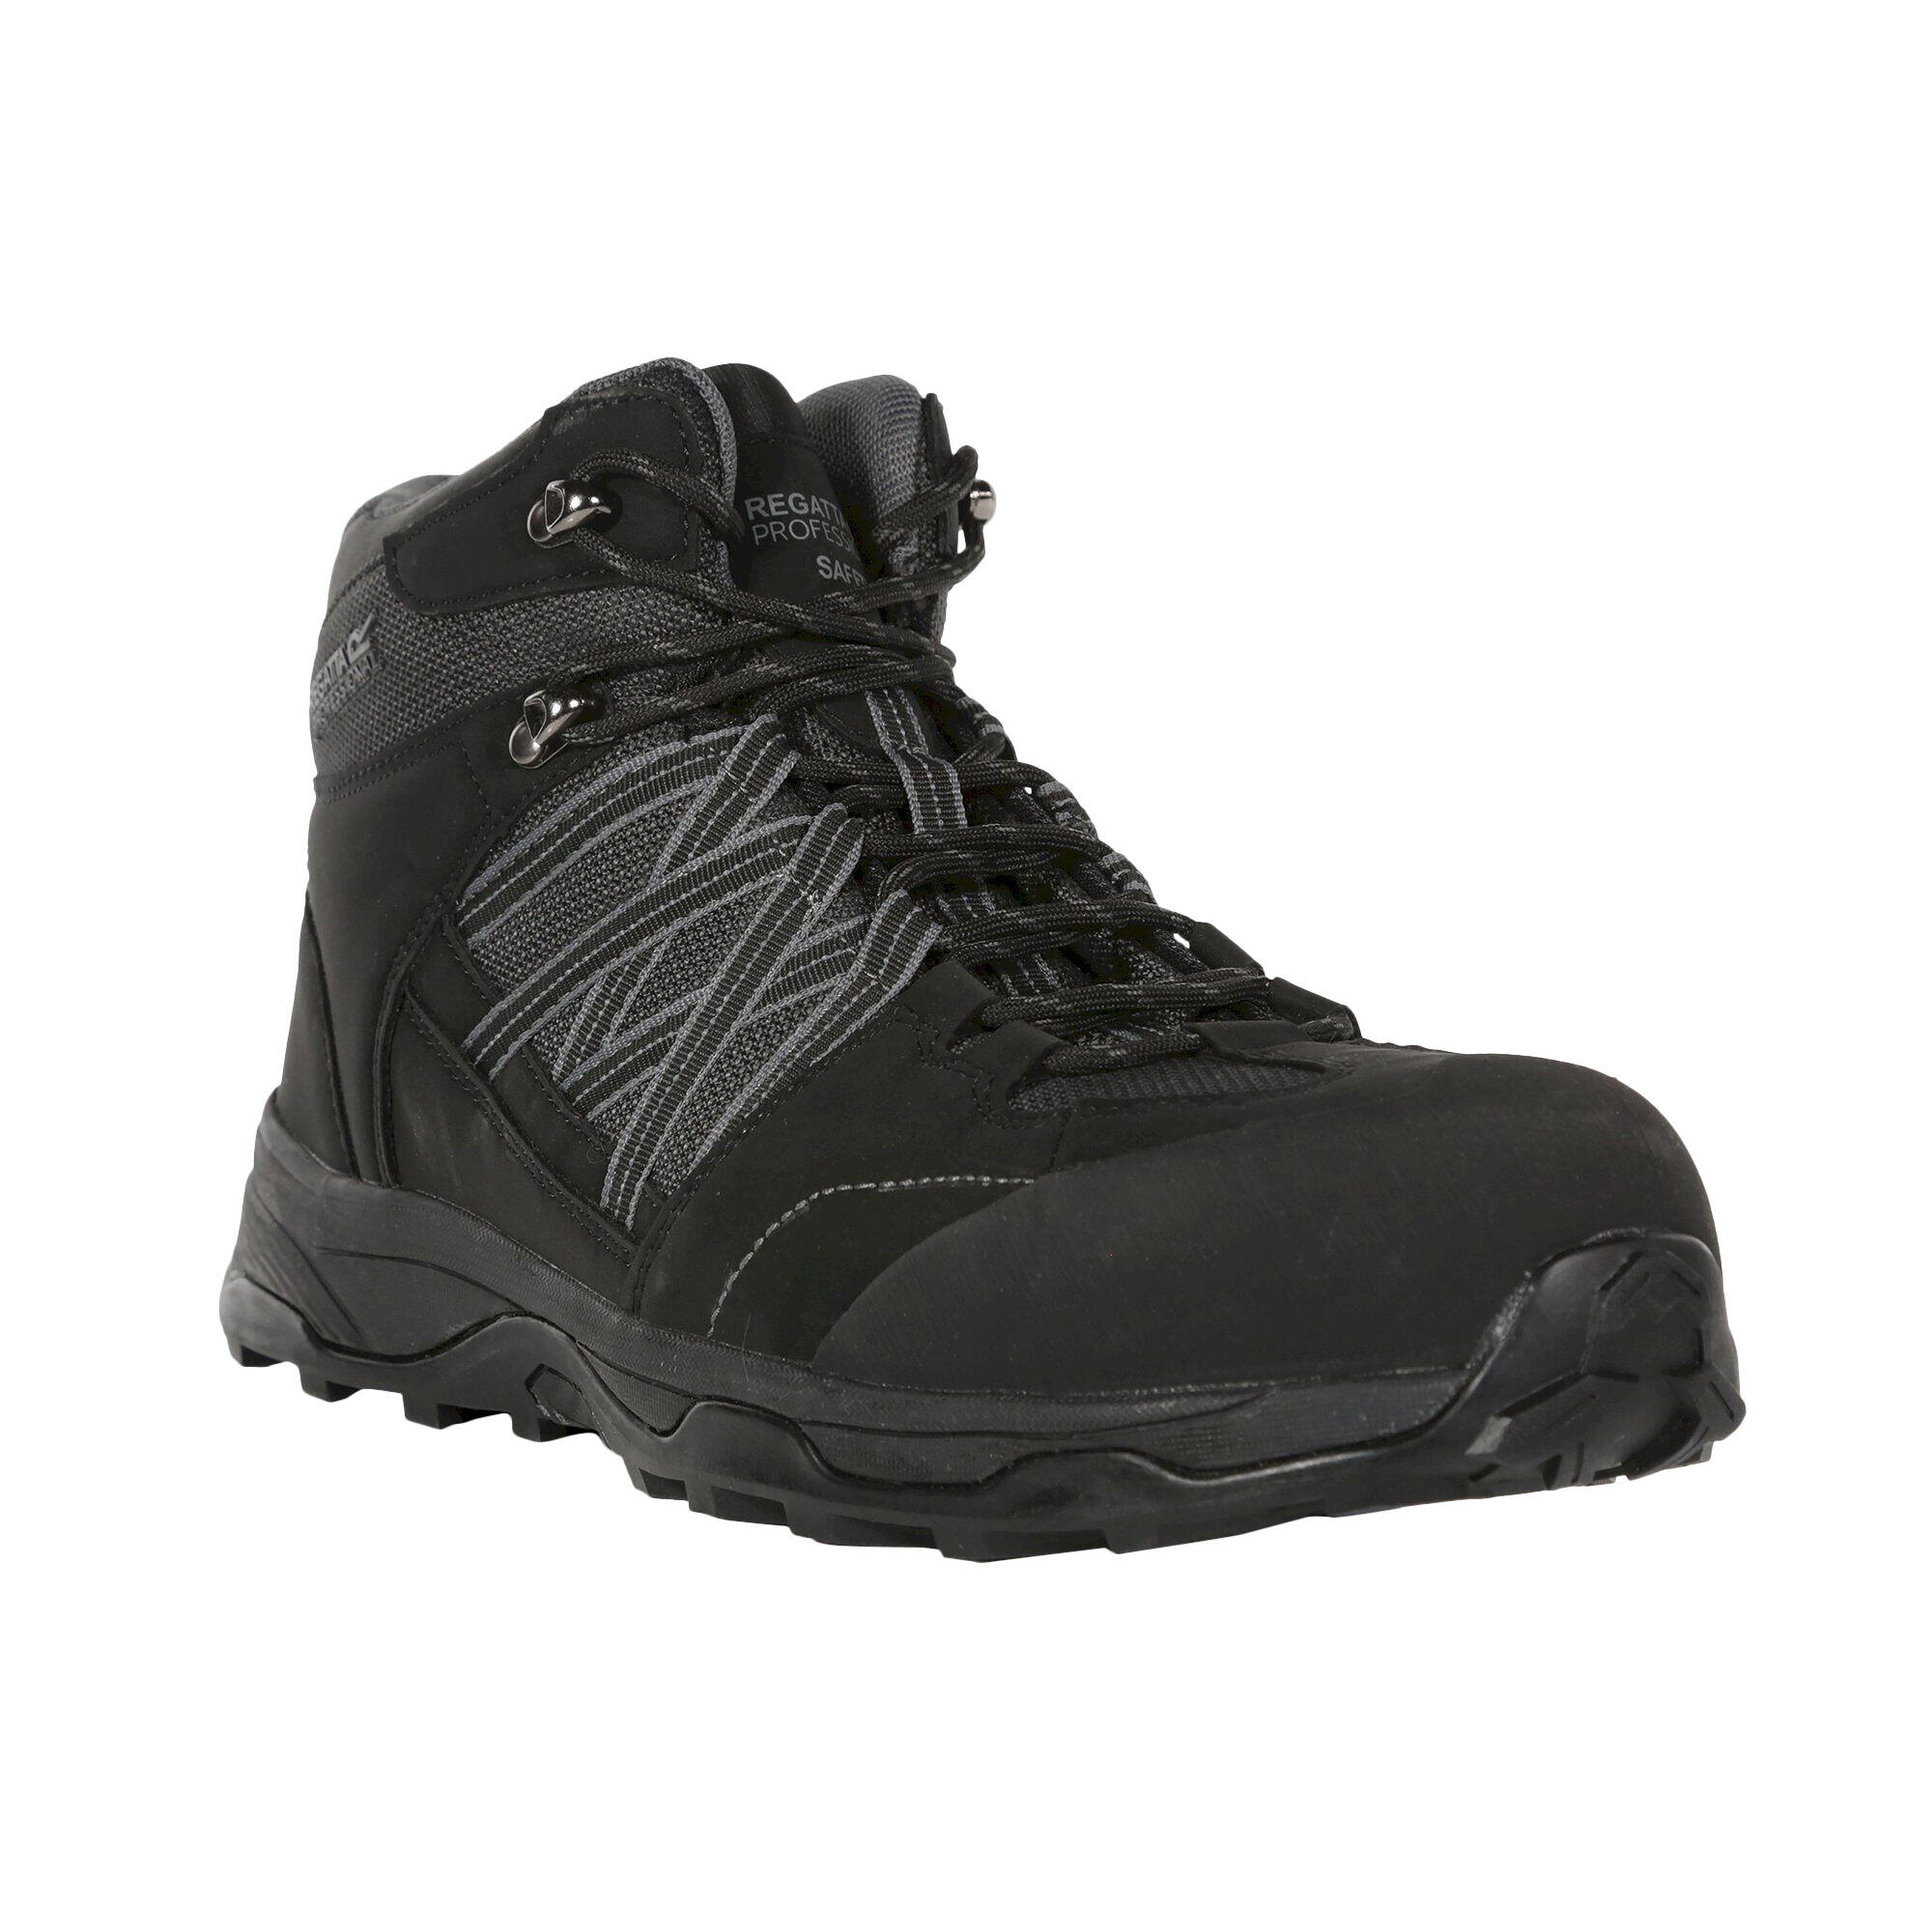 REGATTA Mens Claystone S3 Safety Boots (Black/Granite)